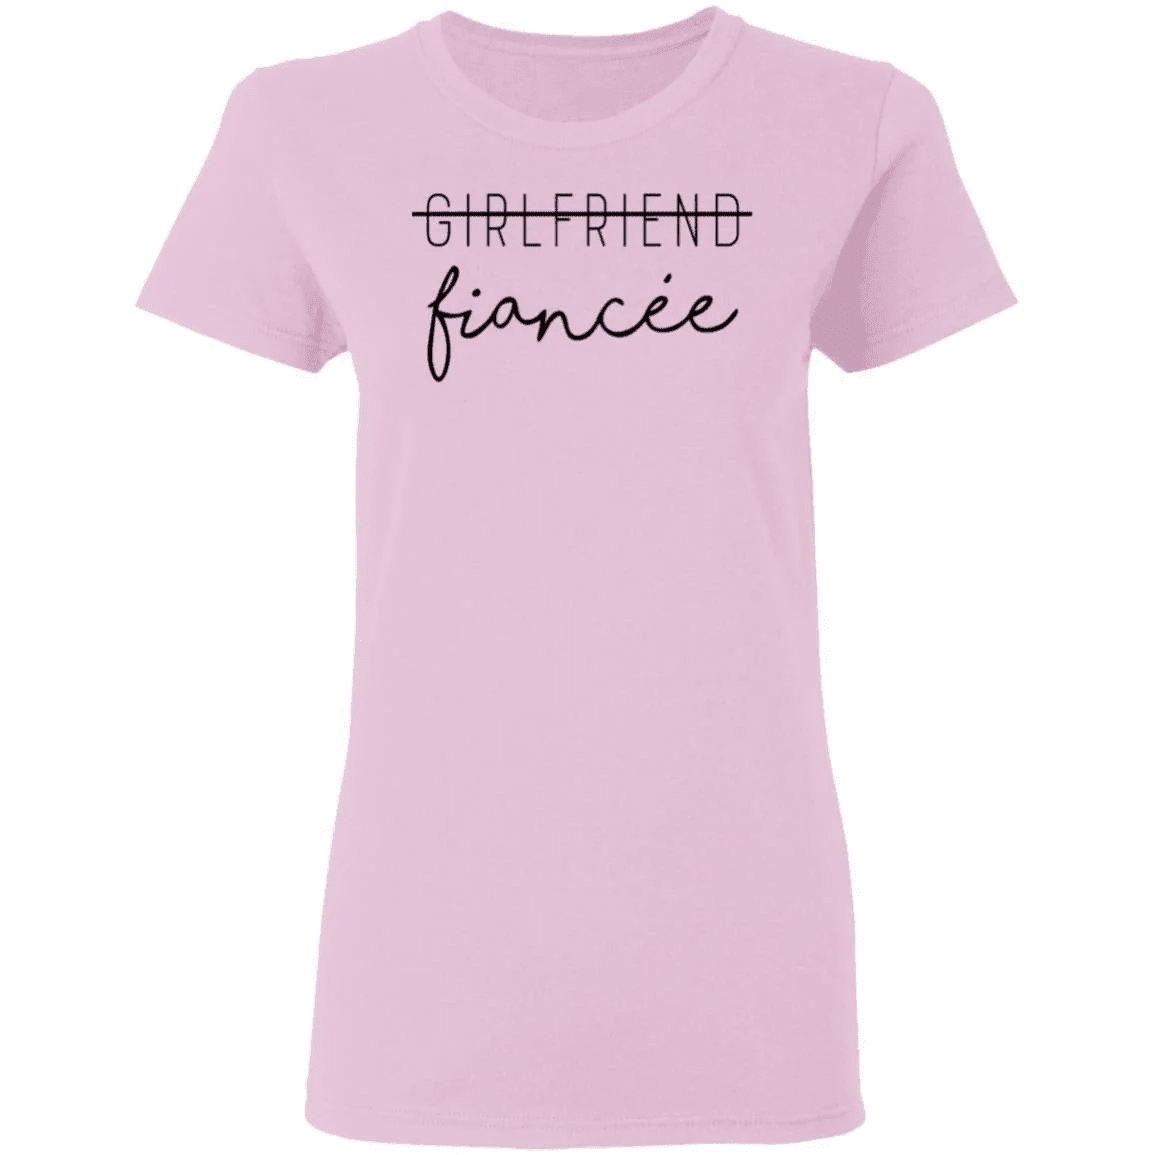 Girlfriend to fiancee - women shirt